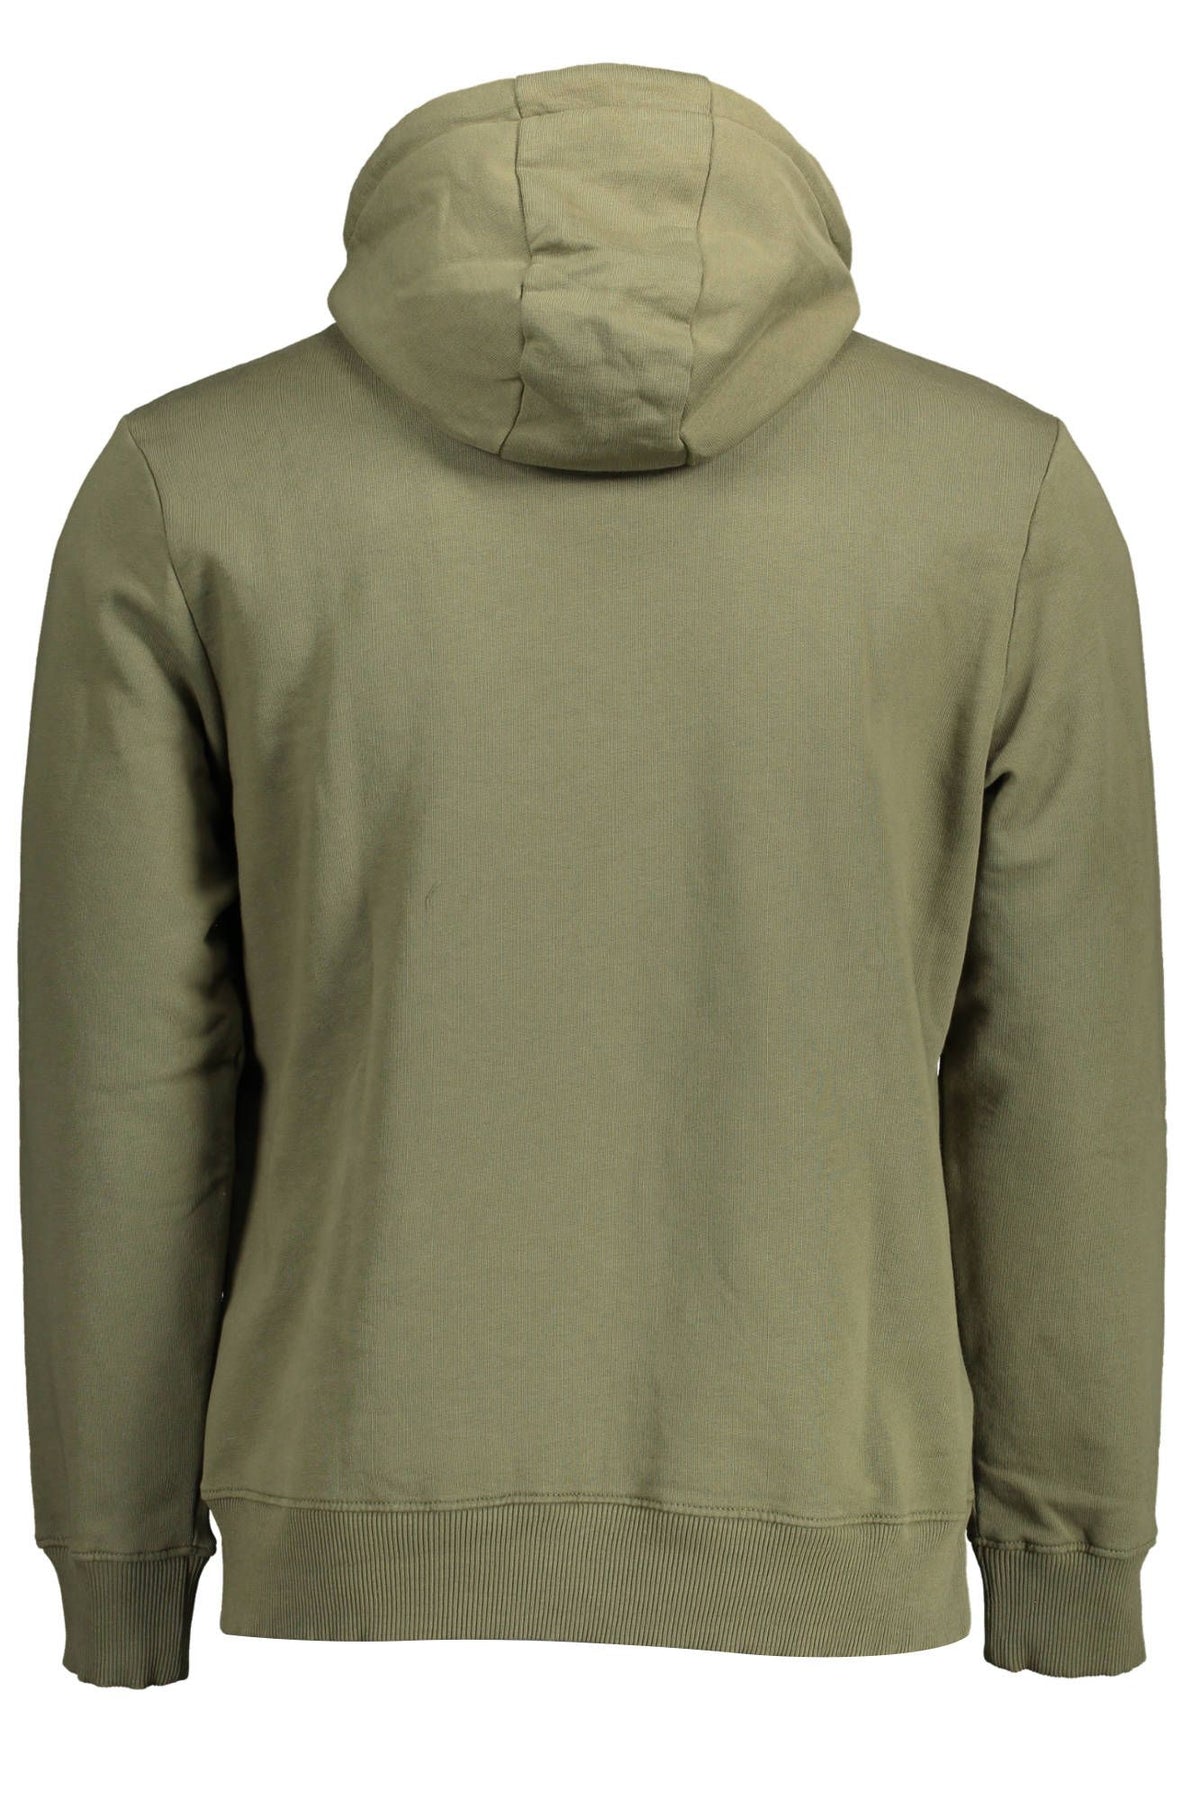 Napapijri Exclusive Green Hooded Sweatshirt